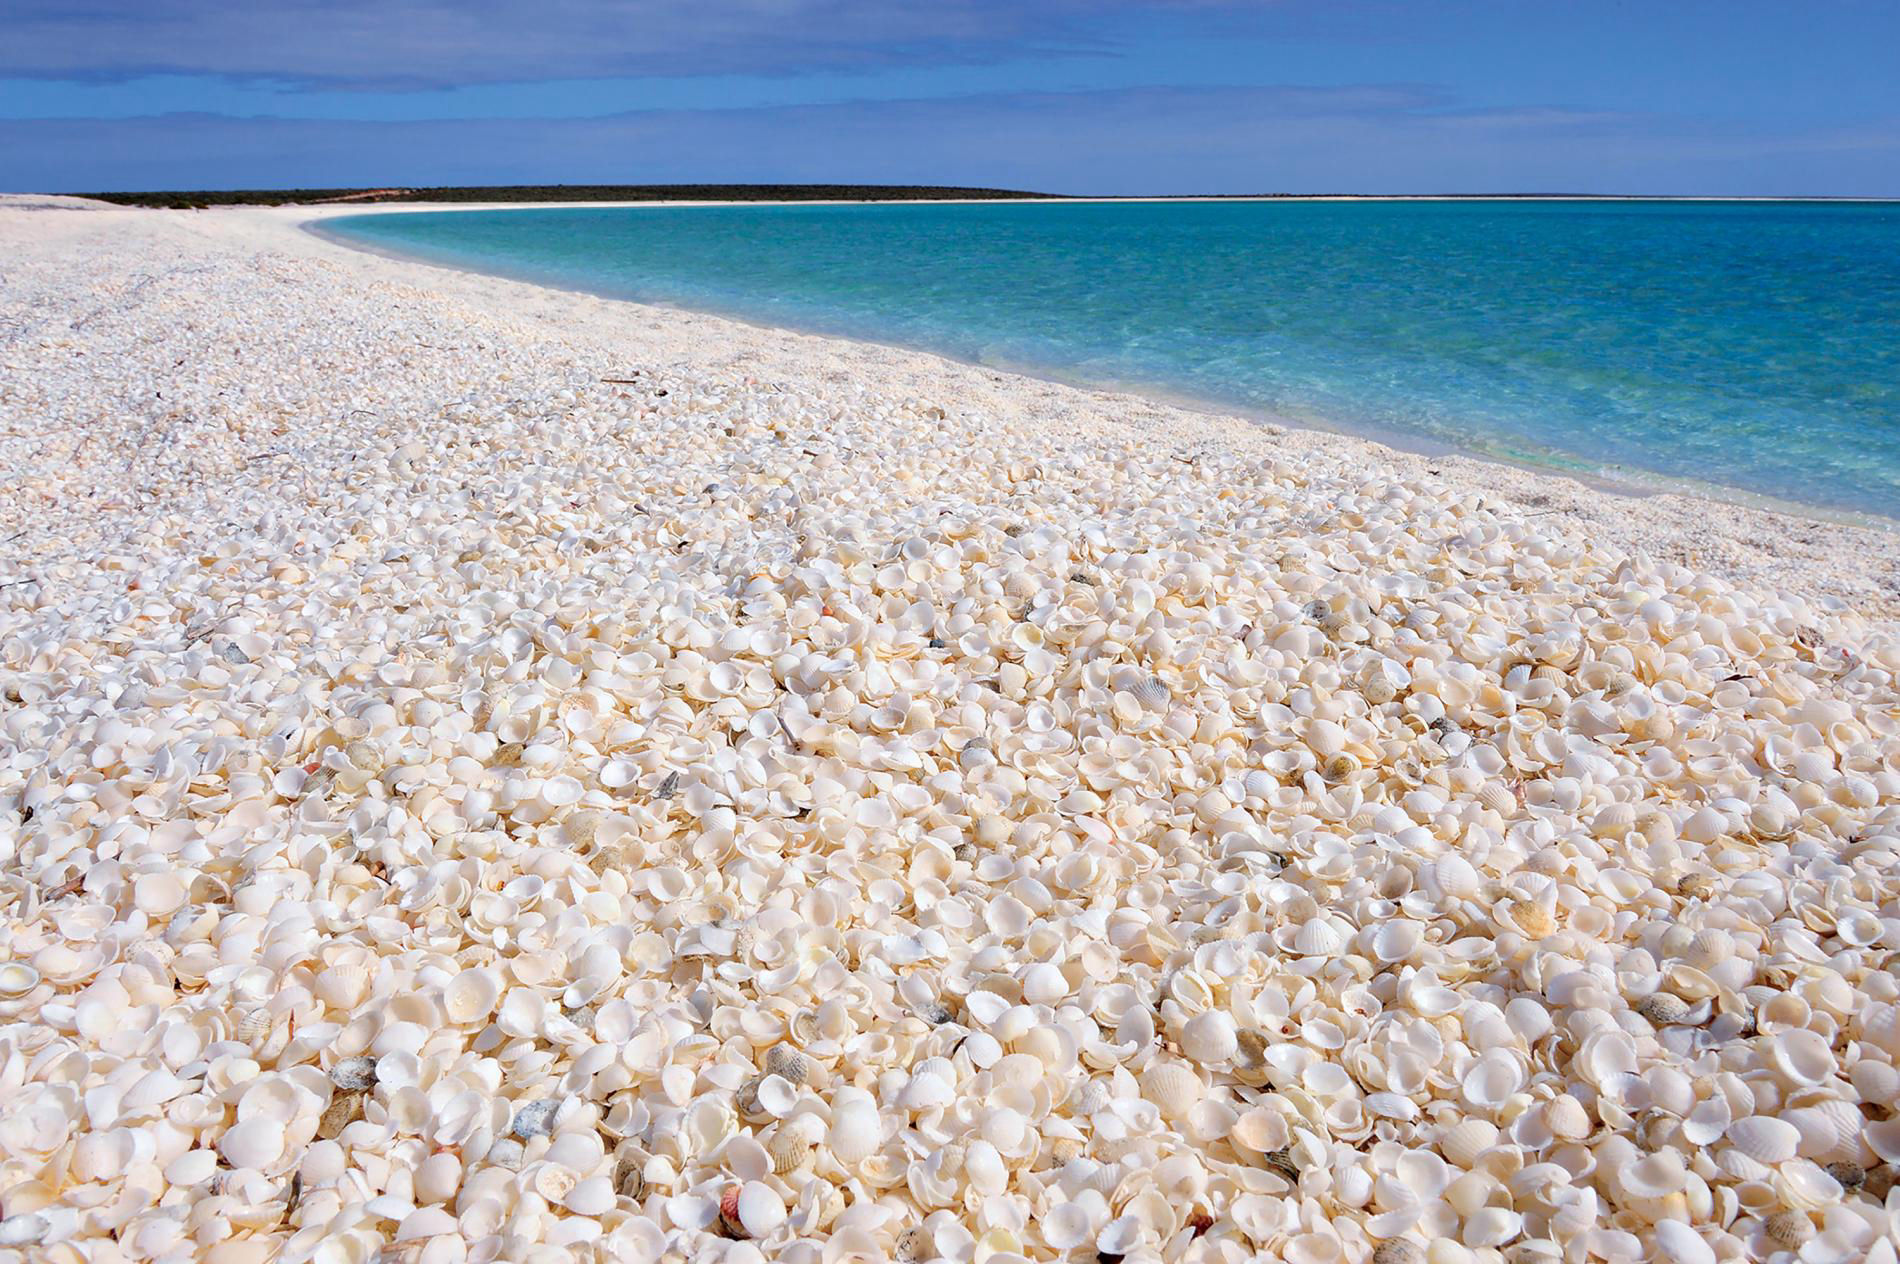 Лучшие пляжи мира по версии National Geographic